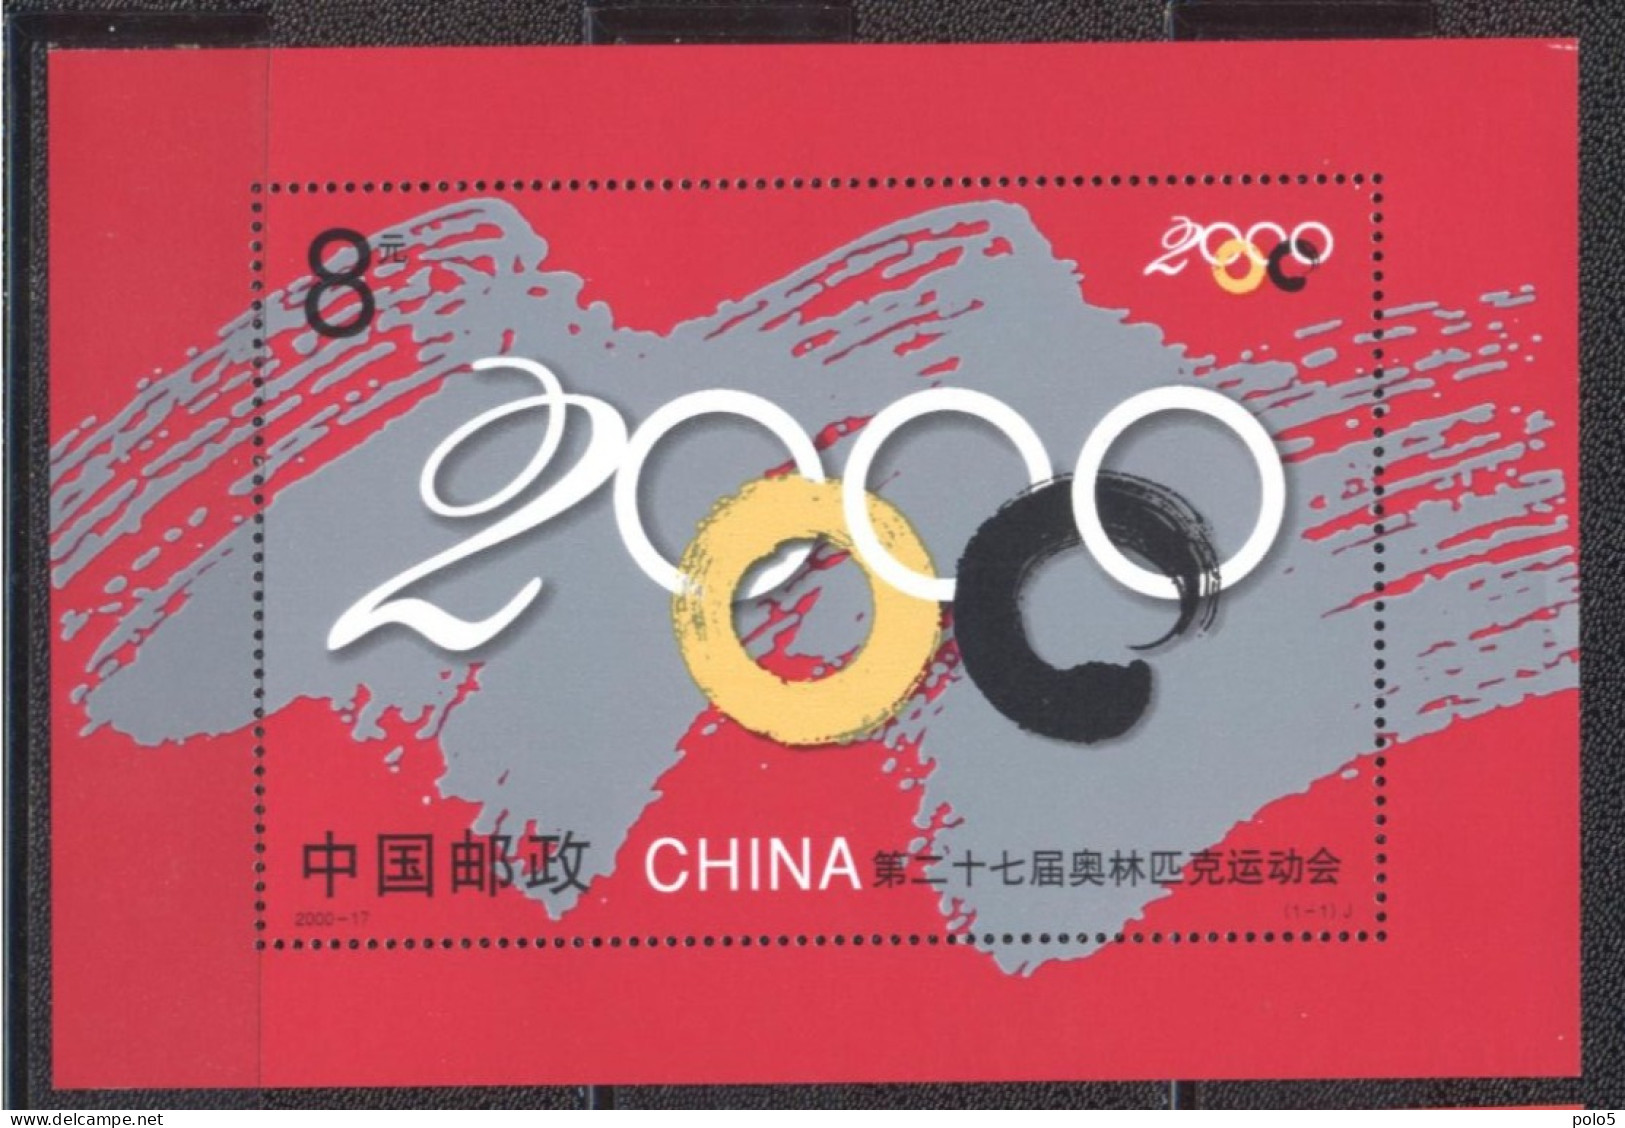 China 2000-Olympic Games ,Sydney - Australia M/Sheet - Zomer 2000: Sydney